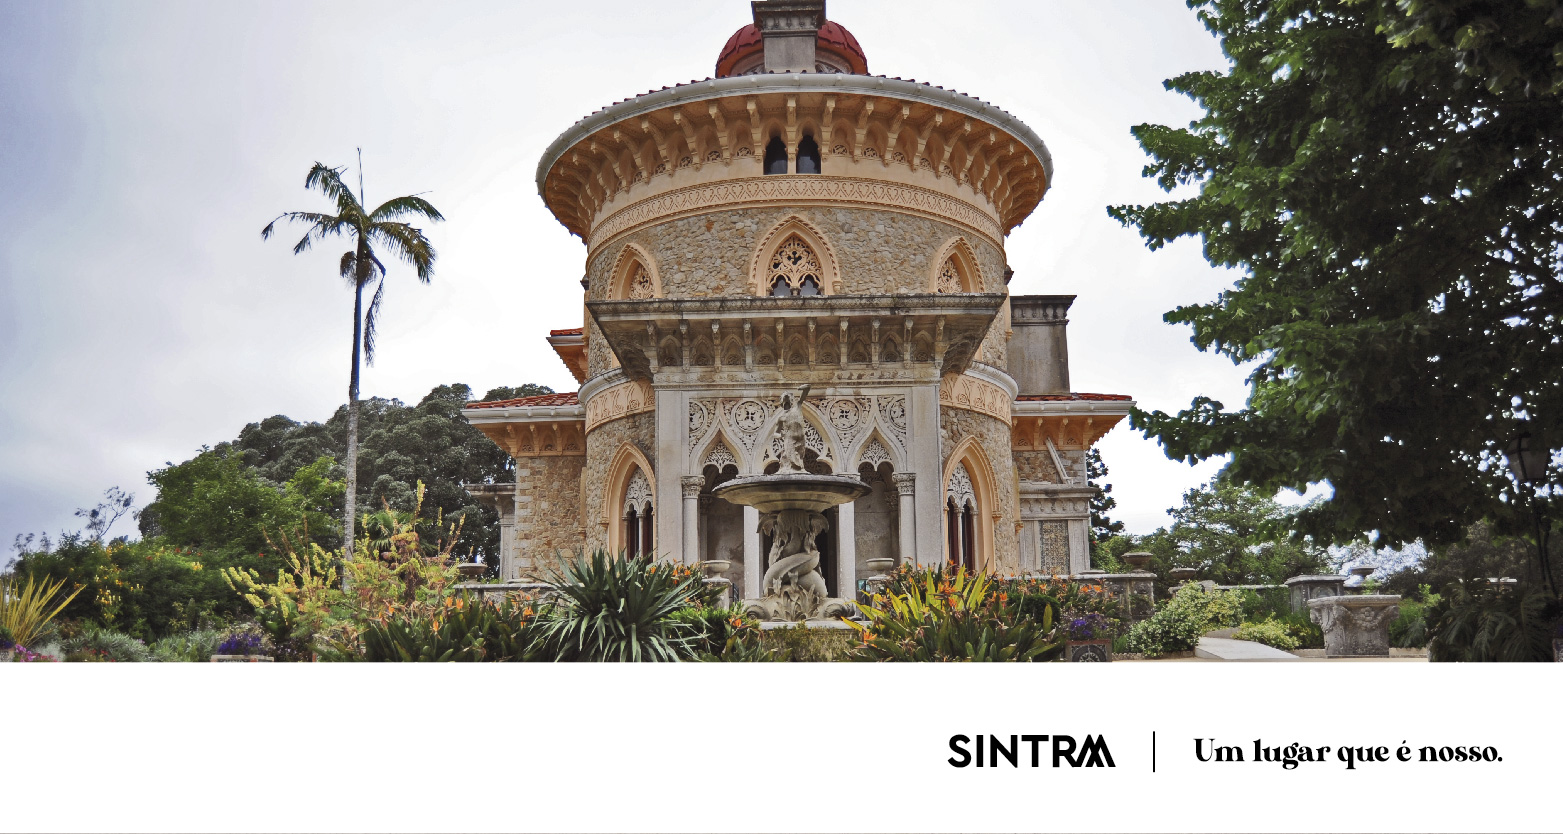 Descubra os melhores jardins e parques para visitar em Sintra